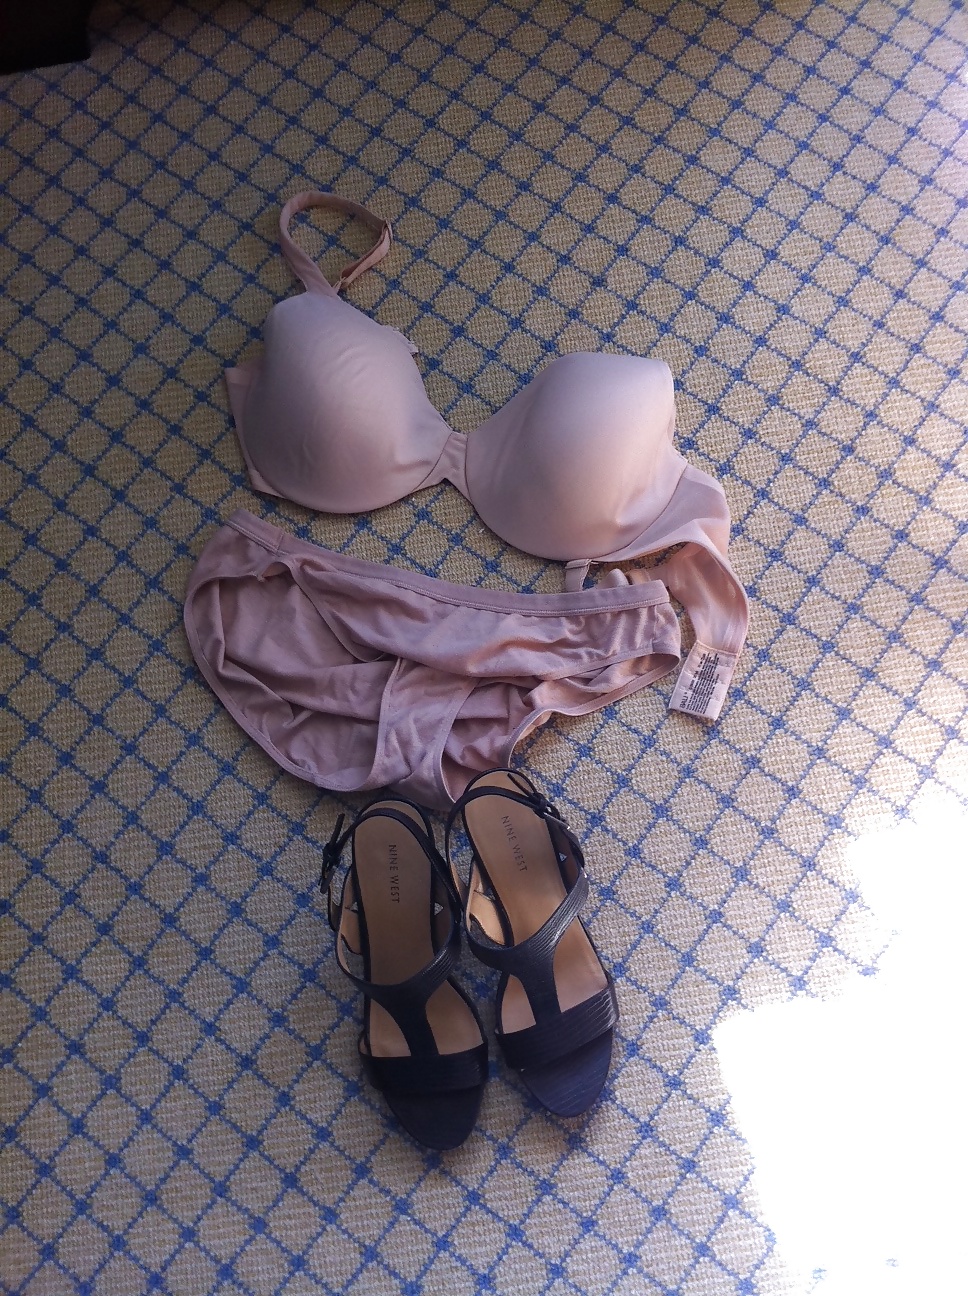 36D bra, panties, shoes..  #17955071